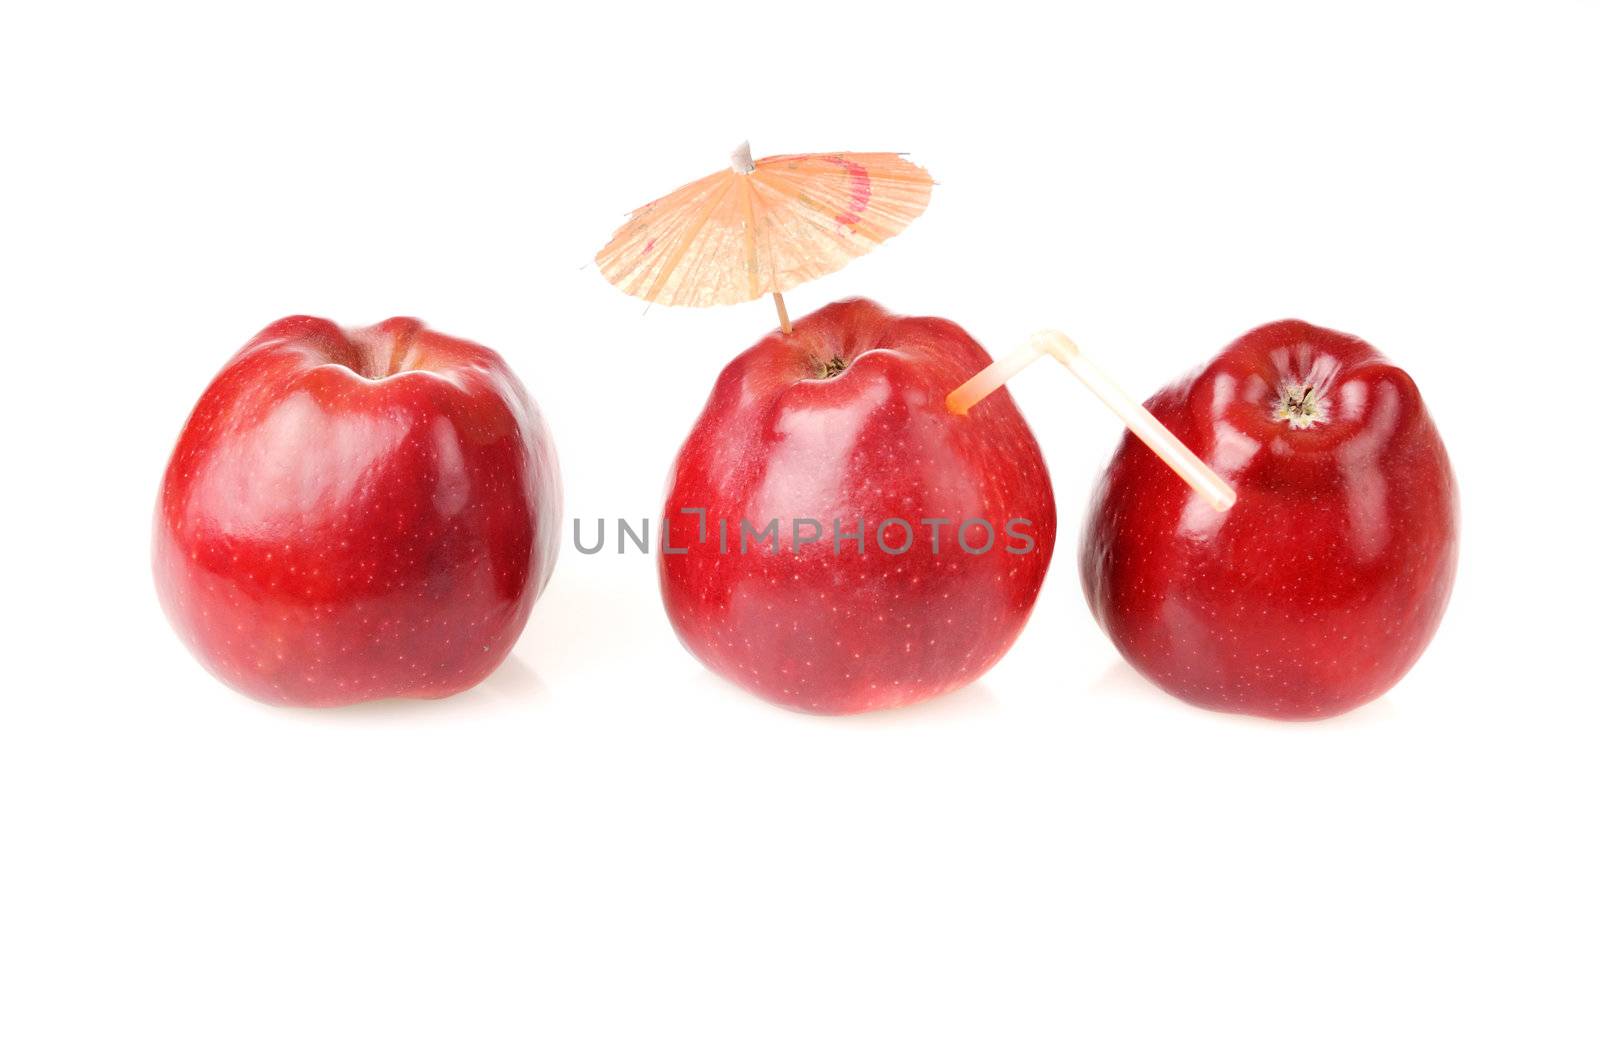 Tree red apples for fresh juice by iryna_rasko